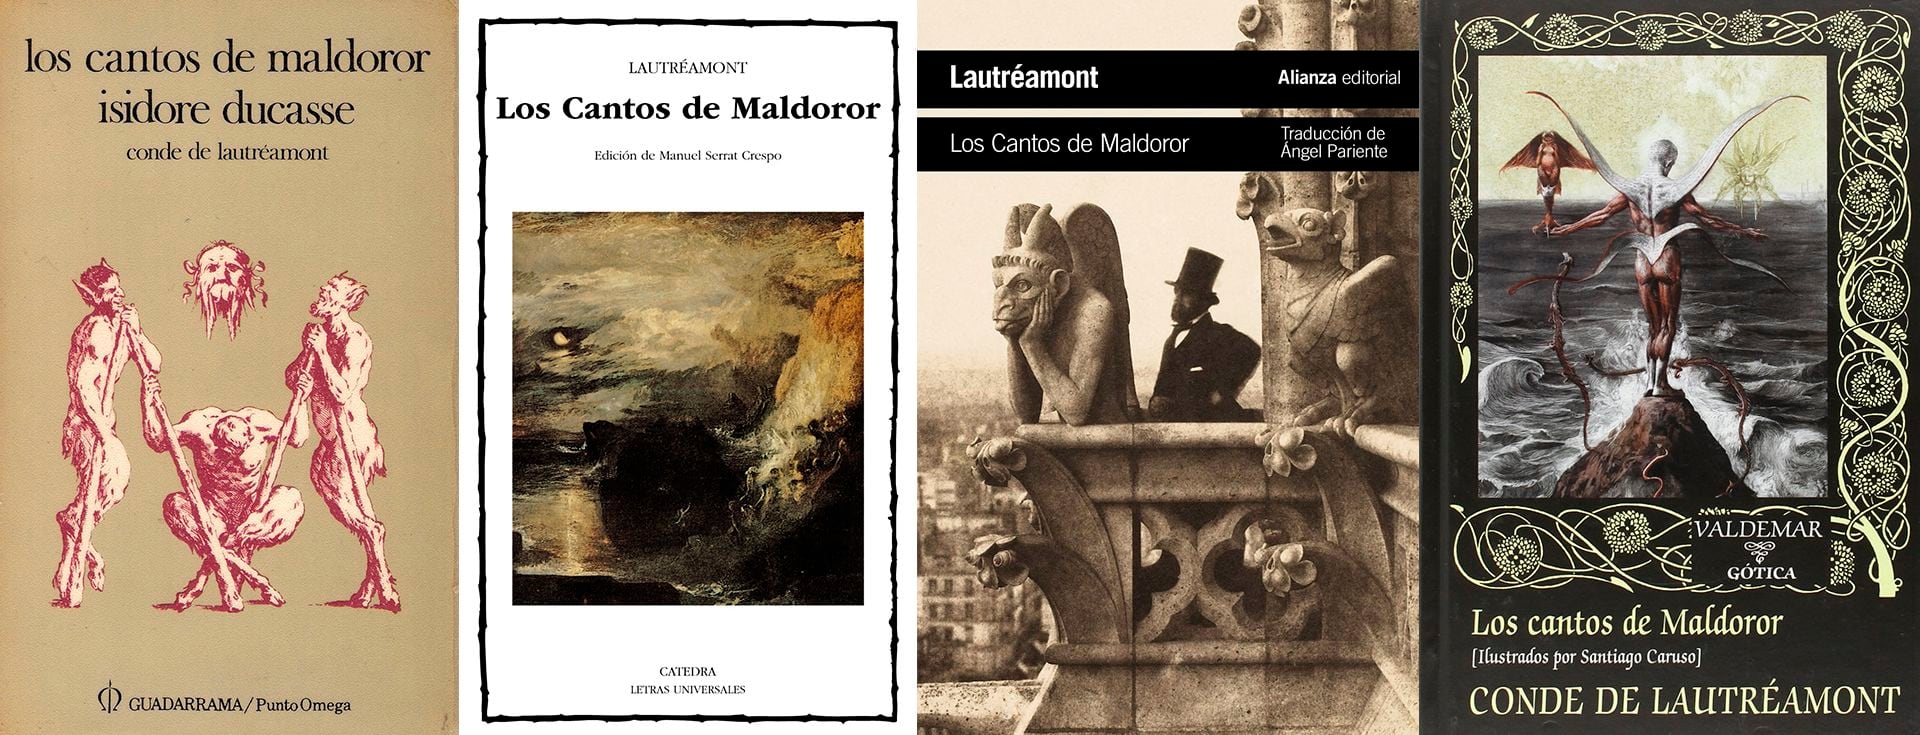 "Los cantos de Maldoror" en diferentes publicaciones en español 